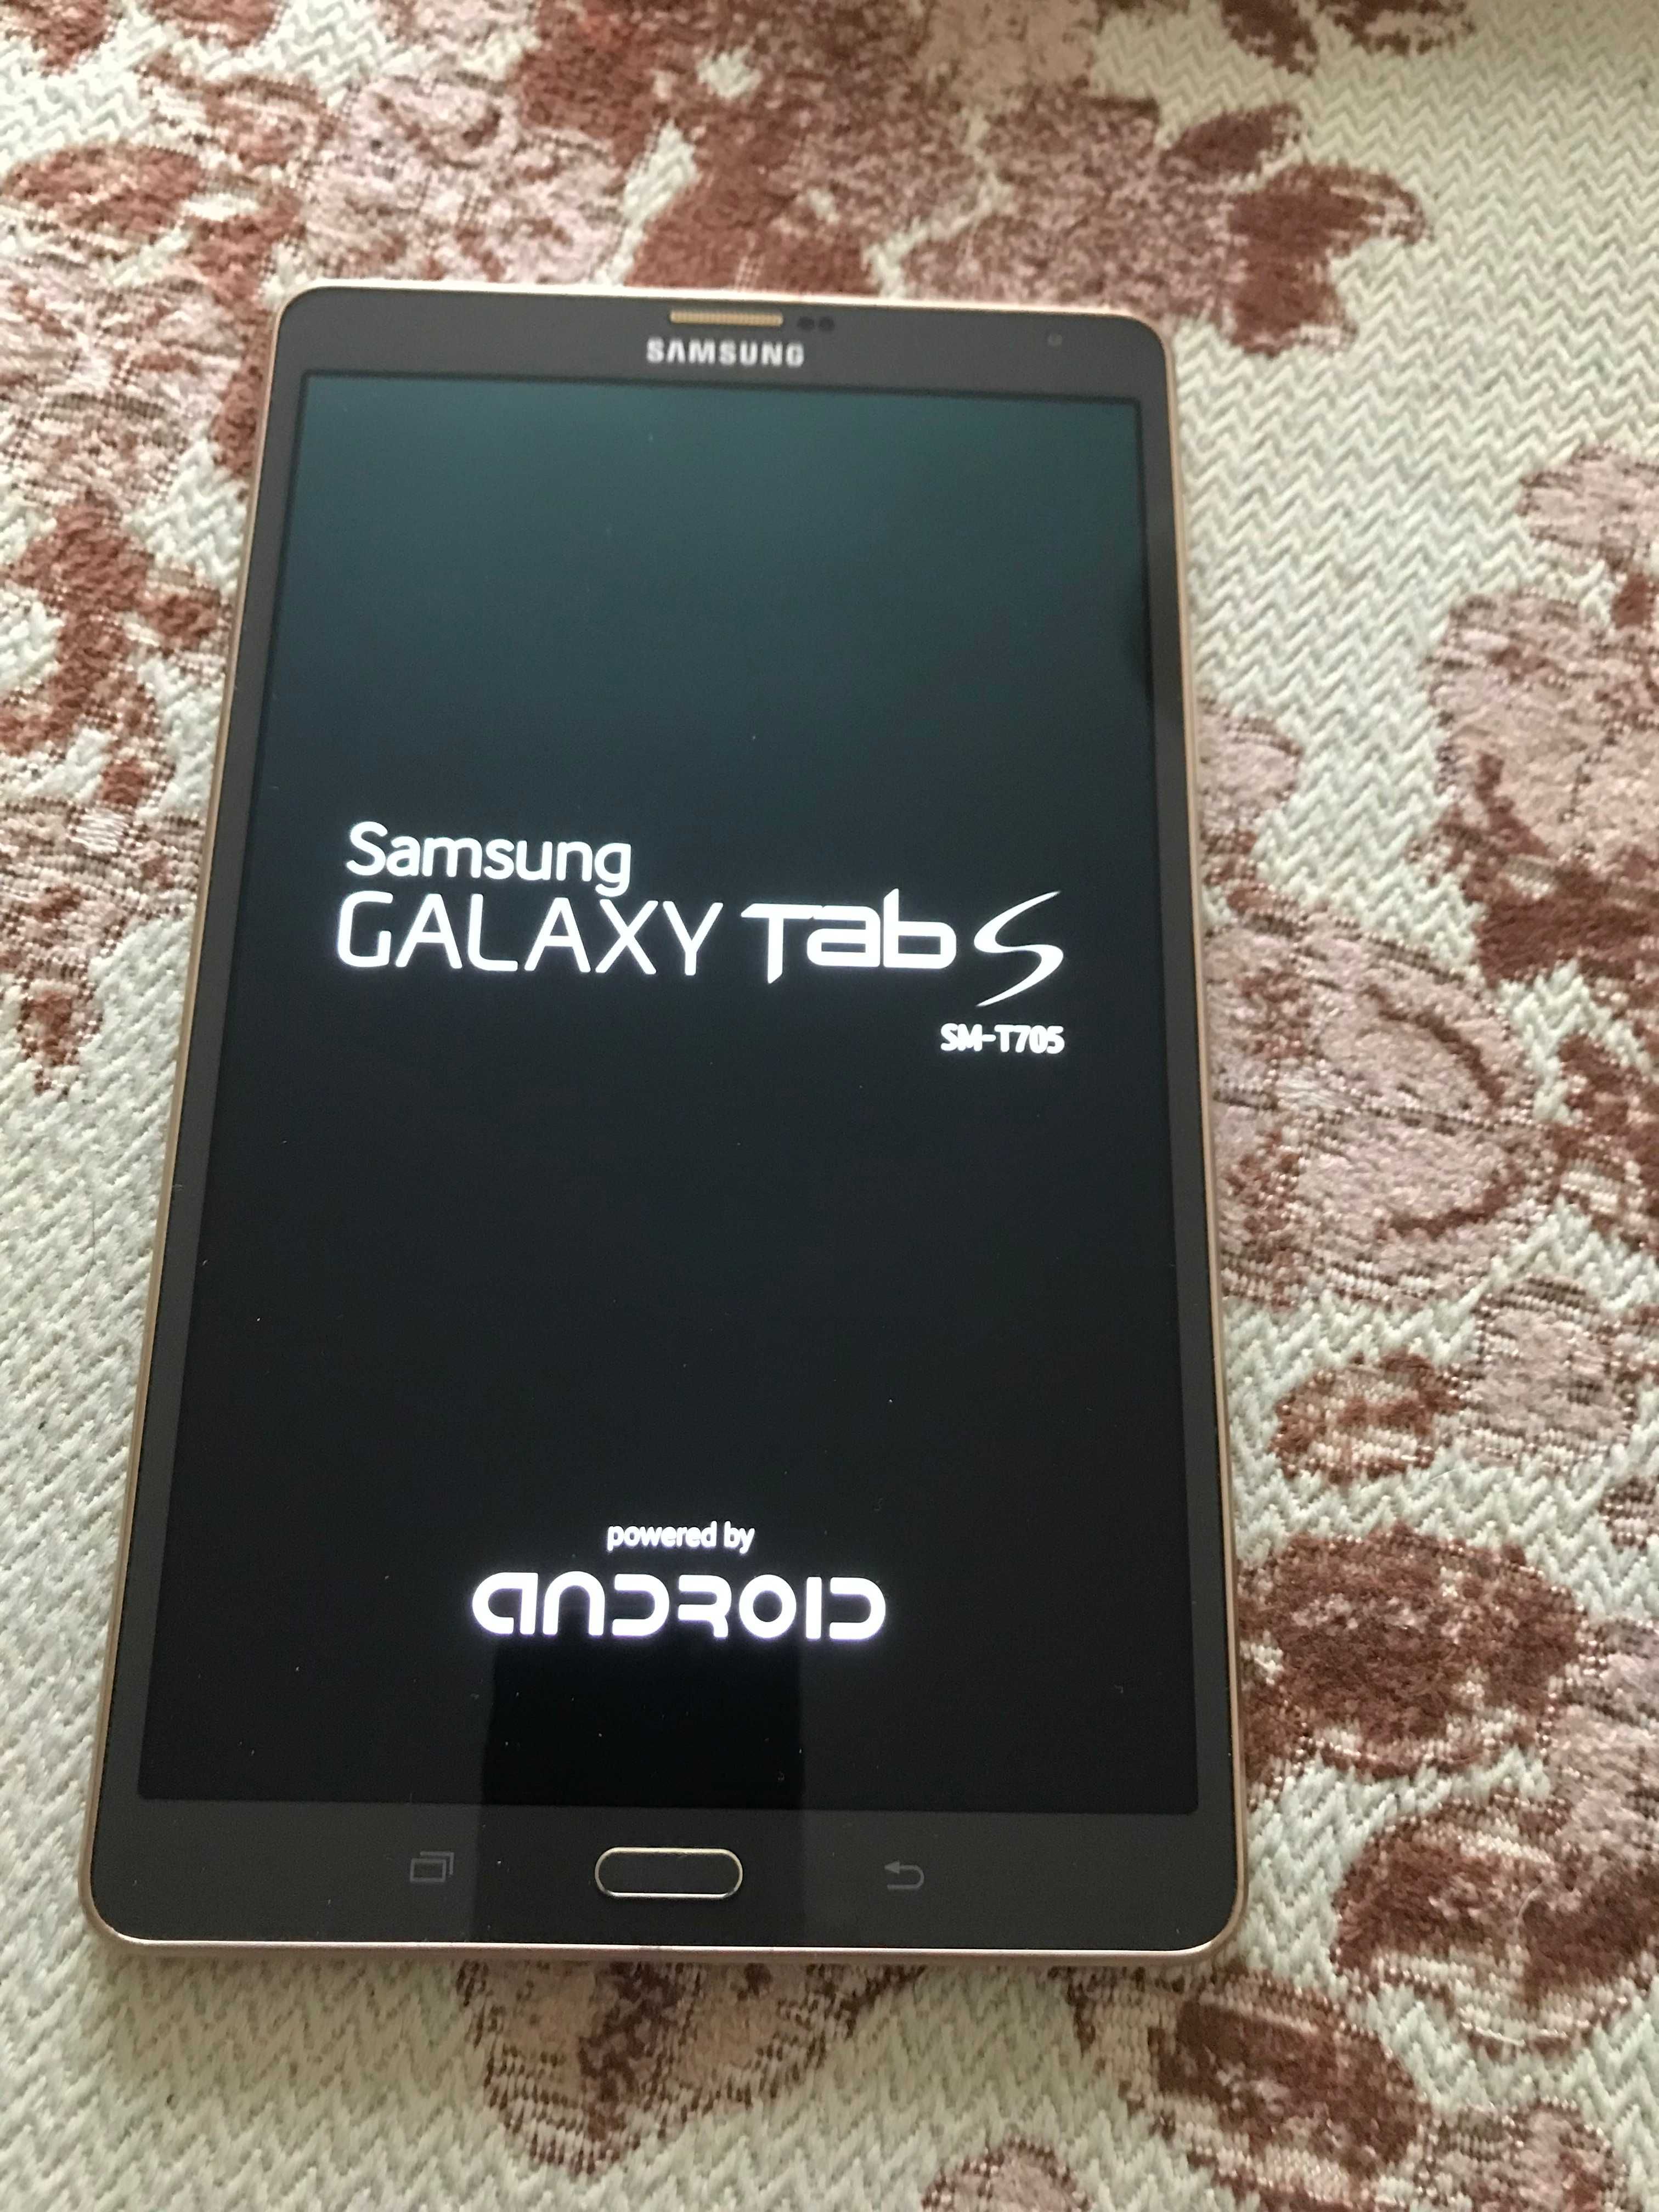 tableta samsung galaxy tab s sm T705 wi fi + celular 150 lei